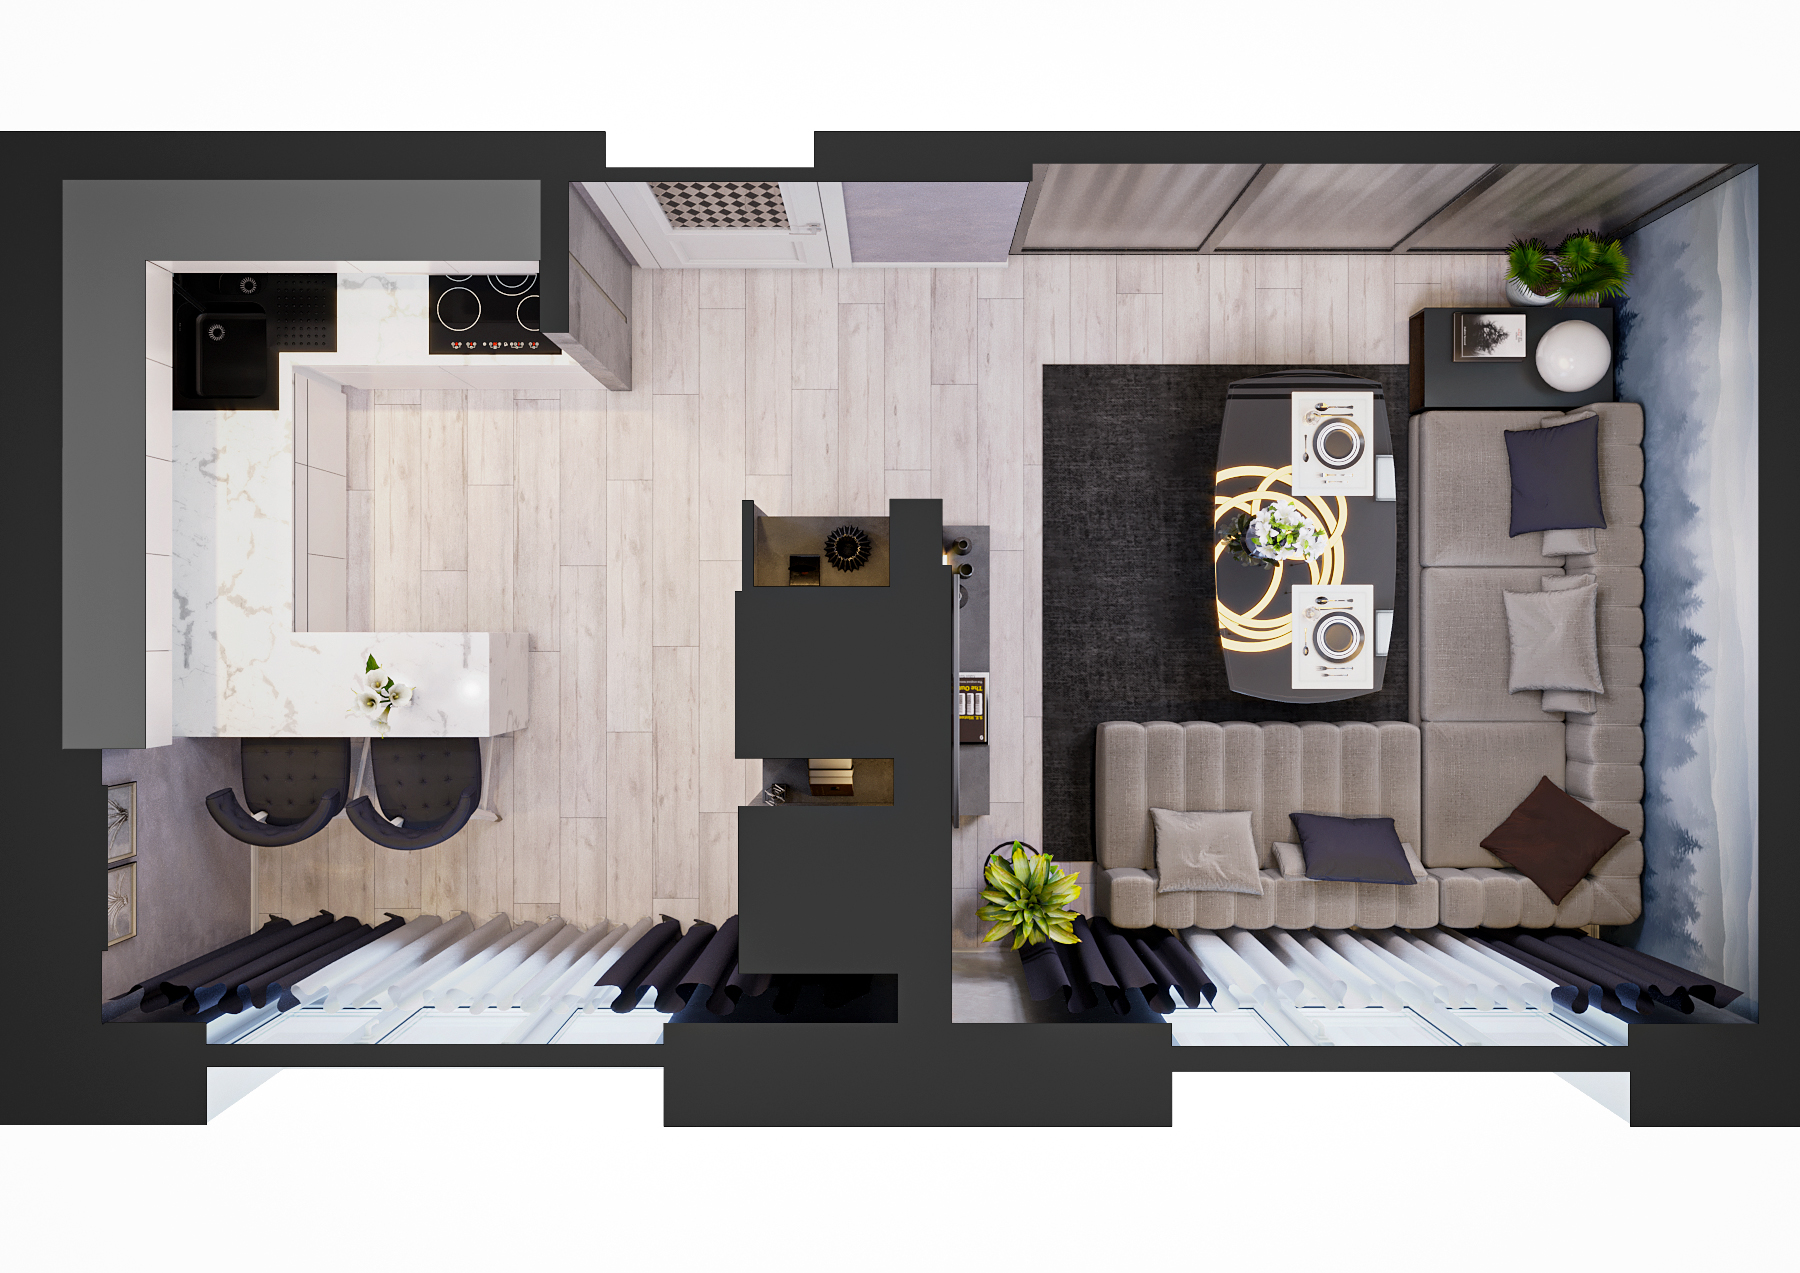 Кухня-столовая в 3d max corona render изображение